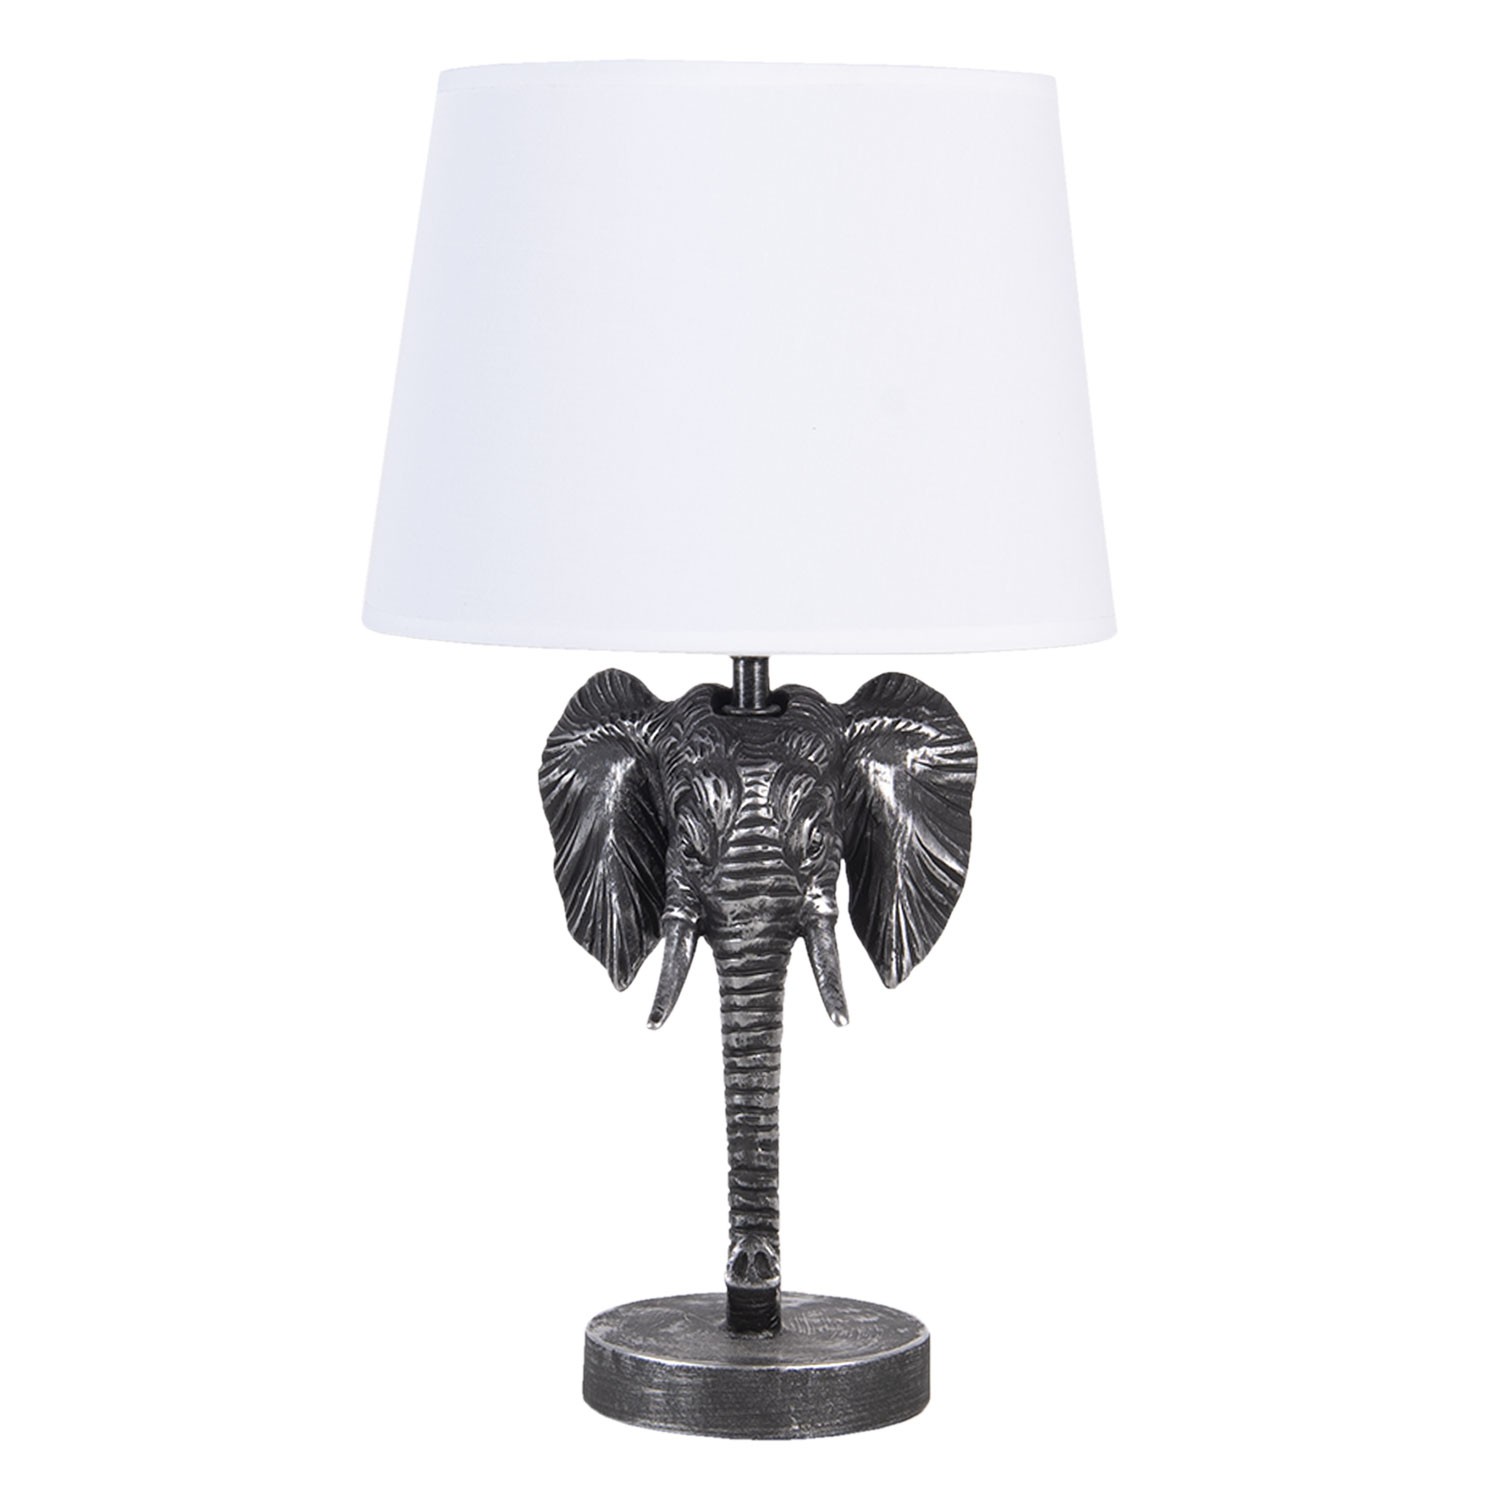 Stříbrno bílá stolní lampa s hlavou slona - 25*25*41 cm E27 6LMC0052